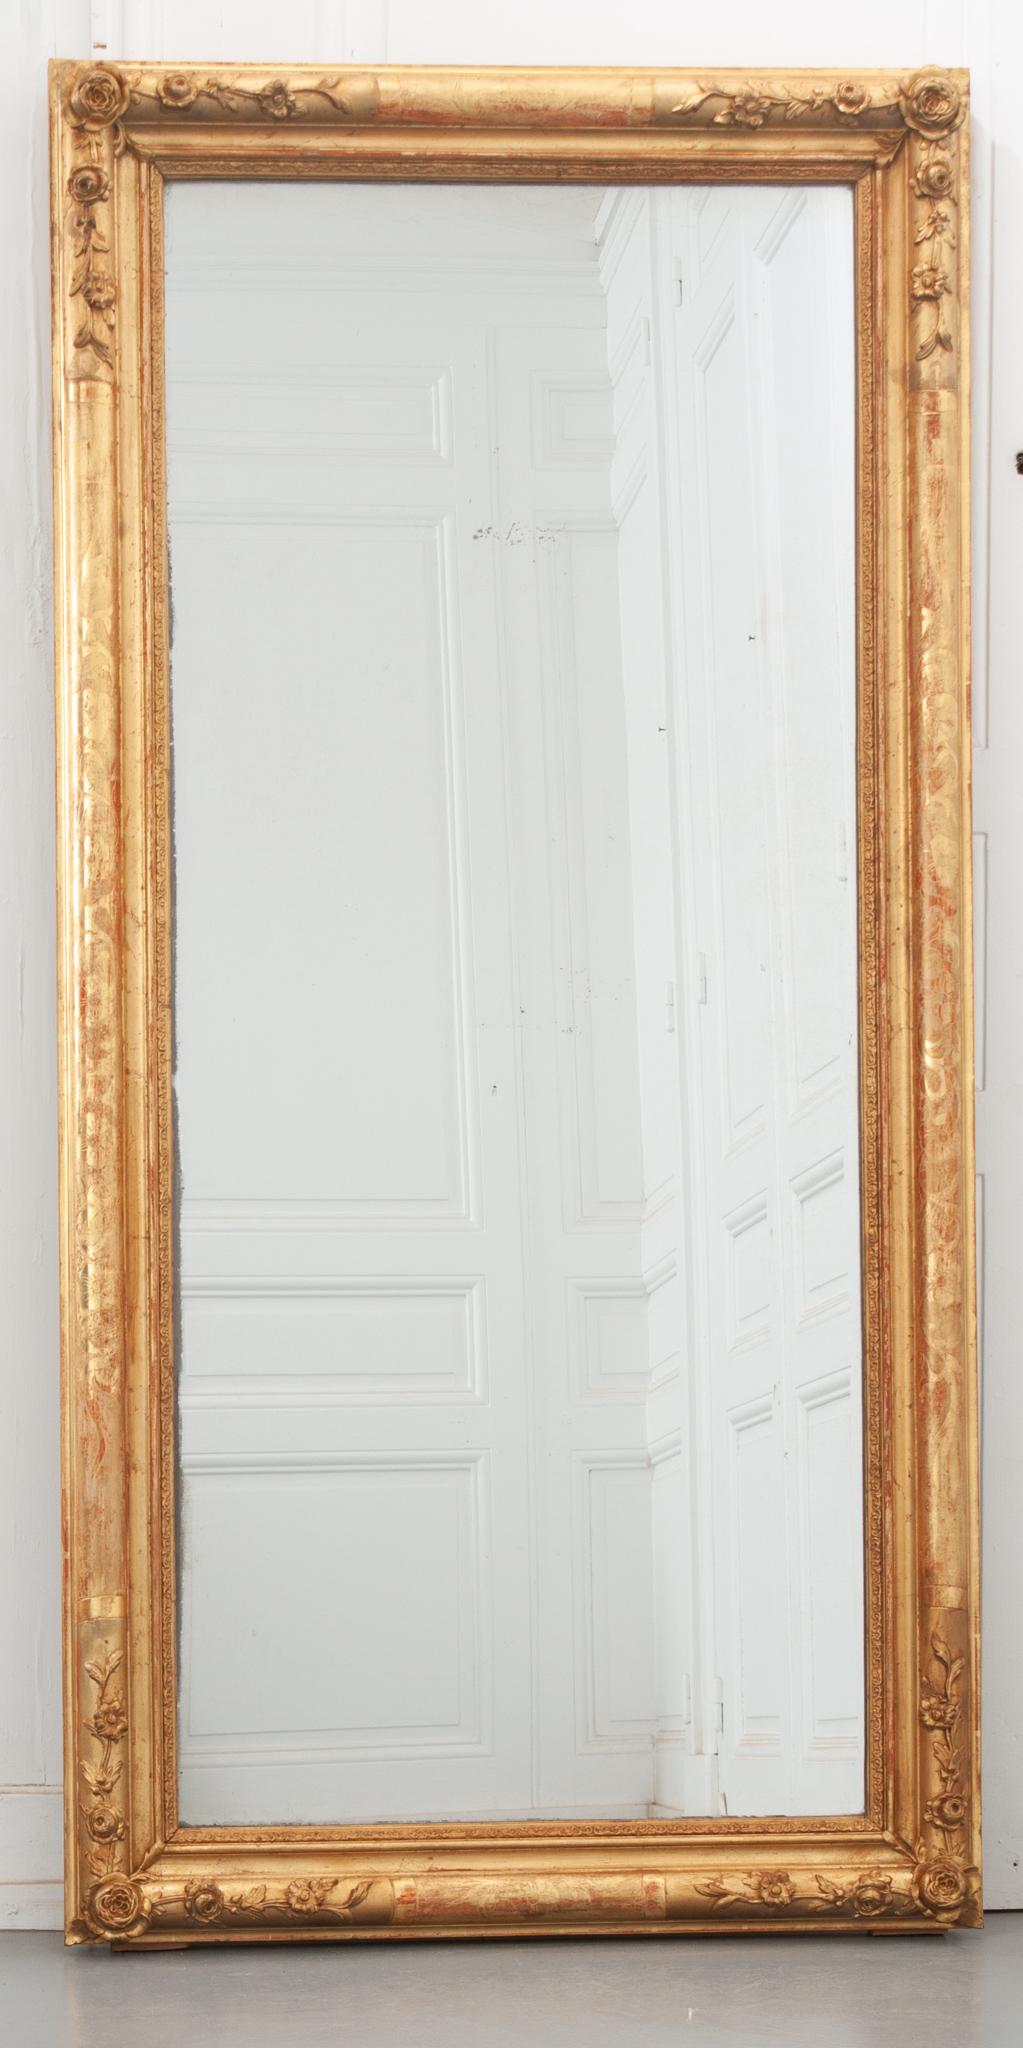 Ce miroir français du XIXe siècle est plein de jolis détails floraux ! Le cadre rectangulaire doré est orné de gravures florales sur tous les côtés et de sculptures en bas-relief dans chaque coin. Portée au fil des ans, la peinture rouge de la base